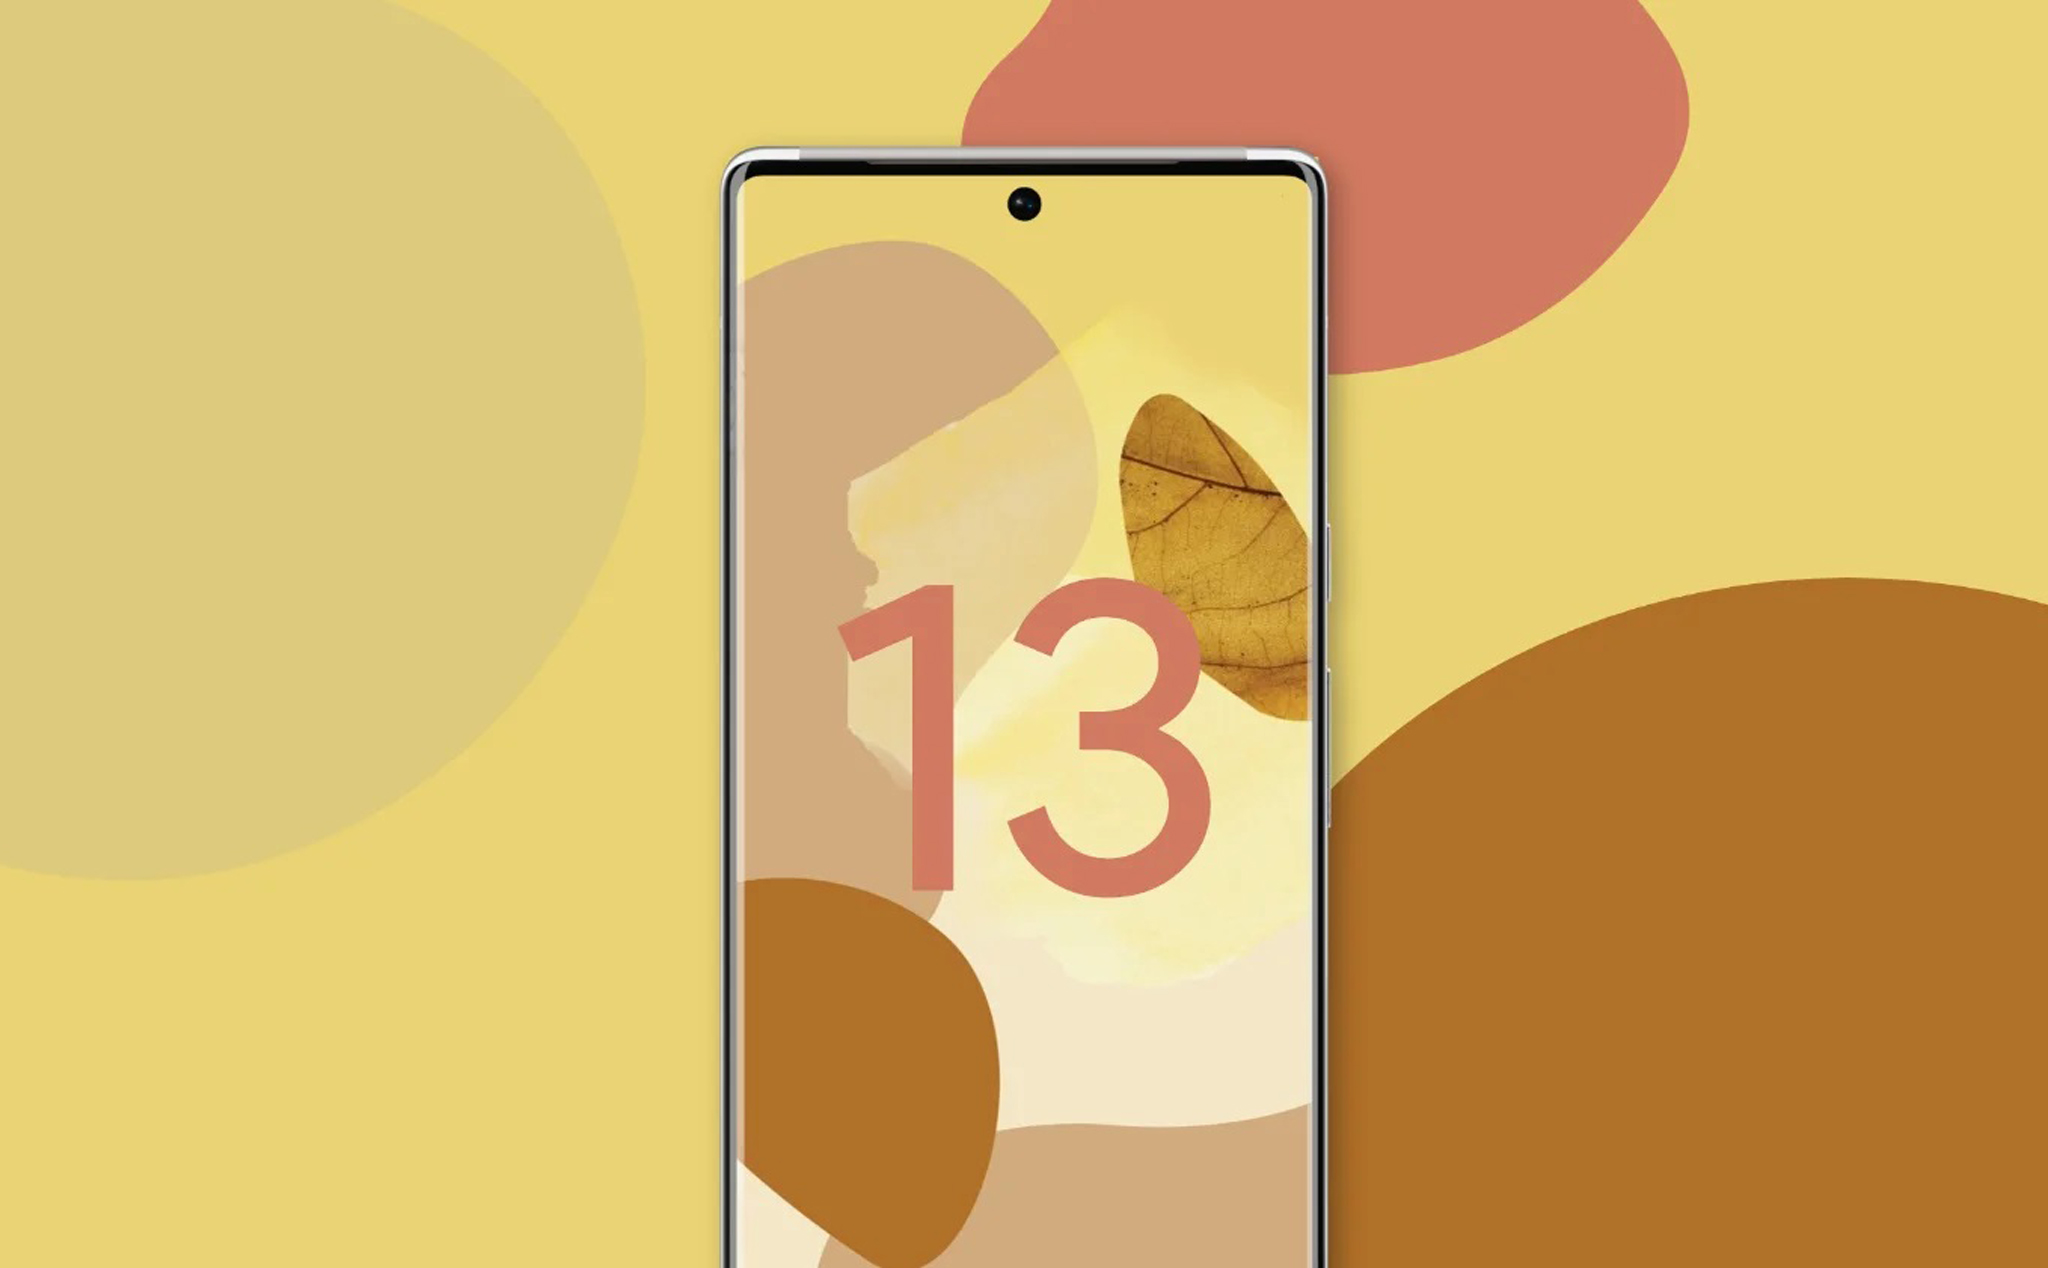 Tháng 9 này dự kiến sẽ có Android 13 chính thức